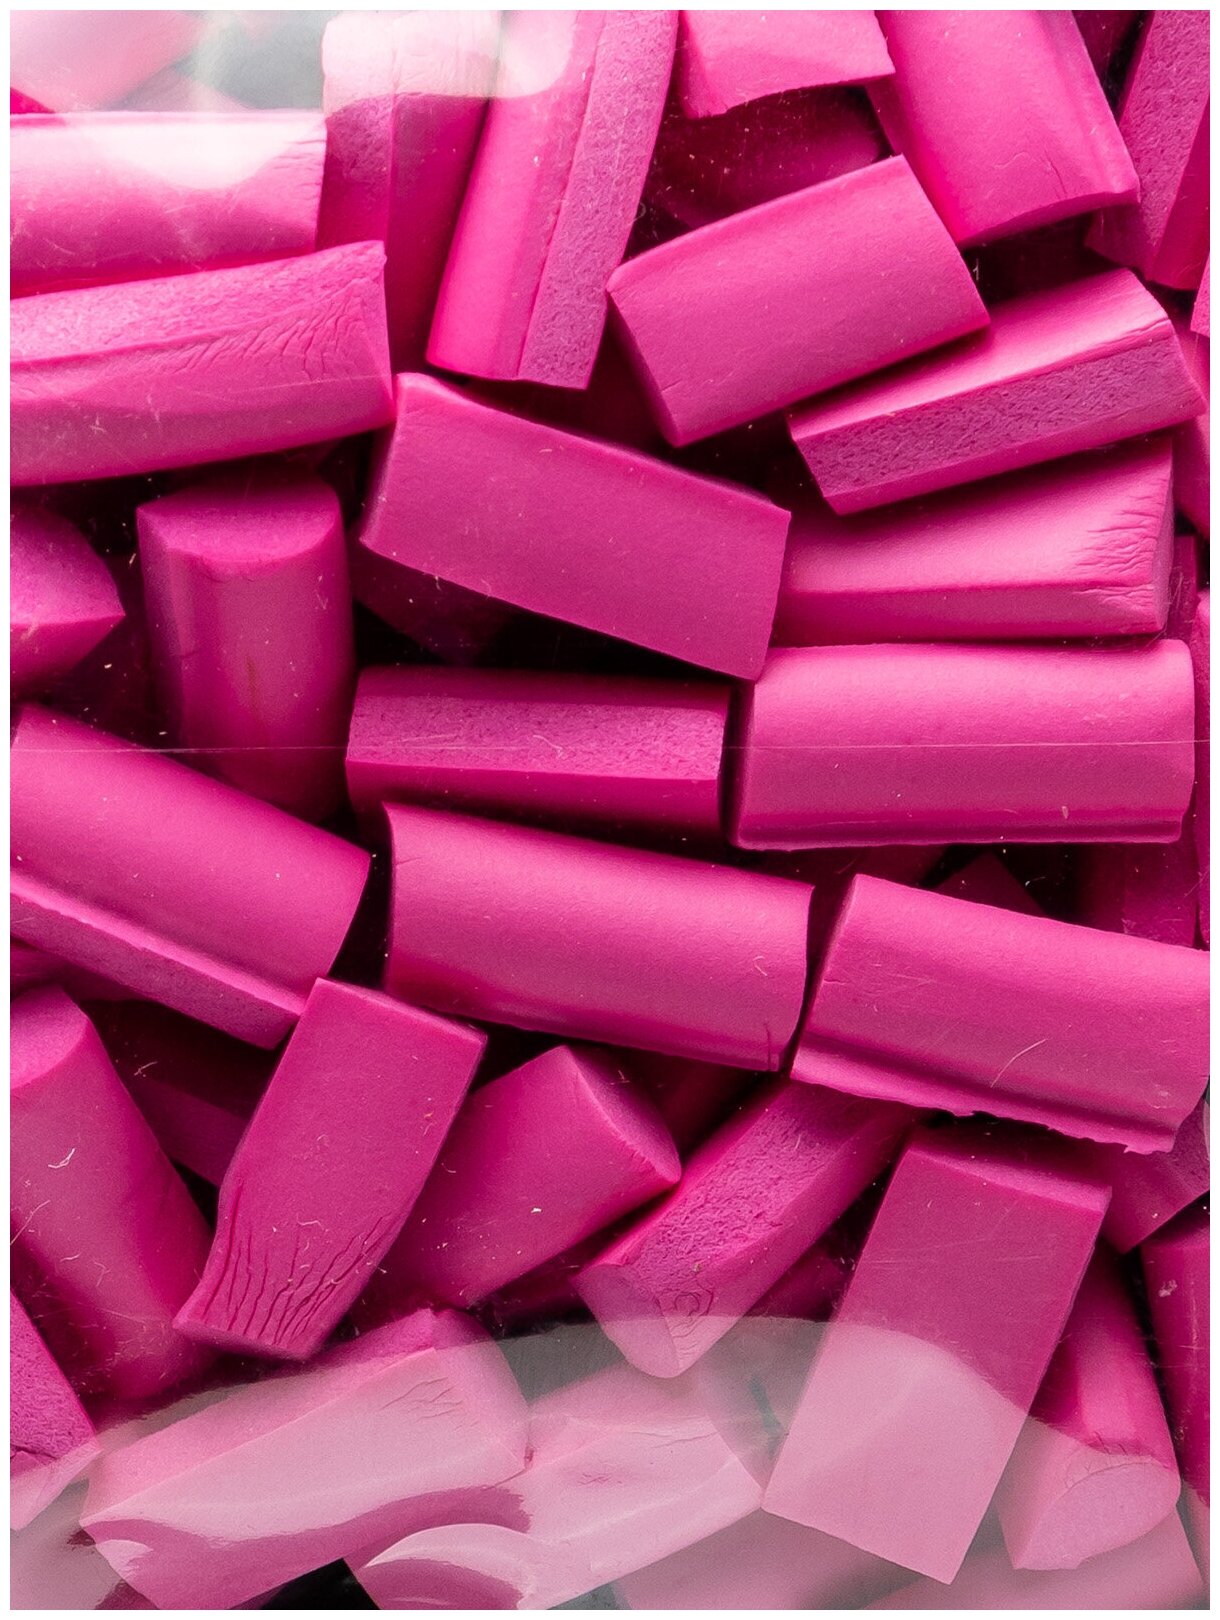 Наполнитель для слайма фоам чанкс (Foam Chunkc) Ярко-розовый ТМ "Slimer"